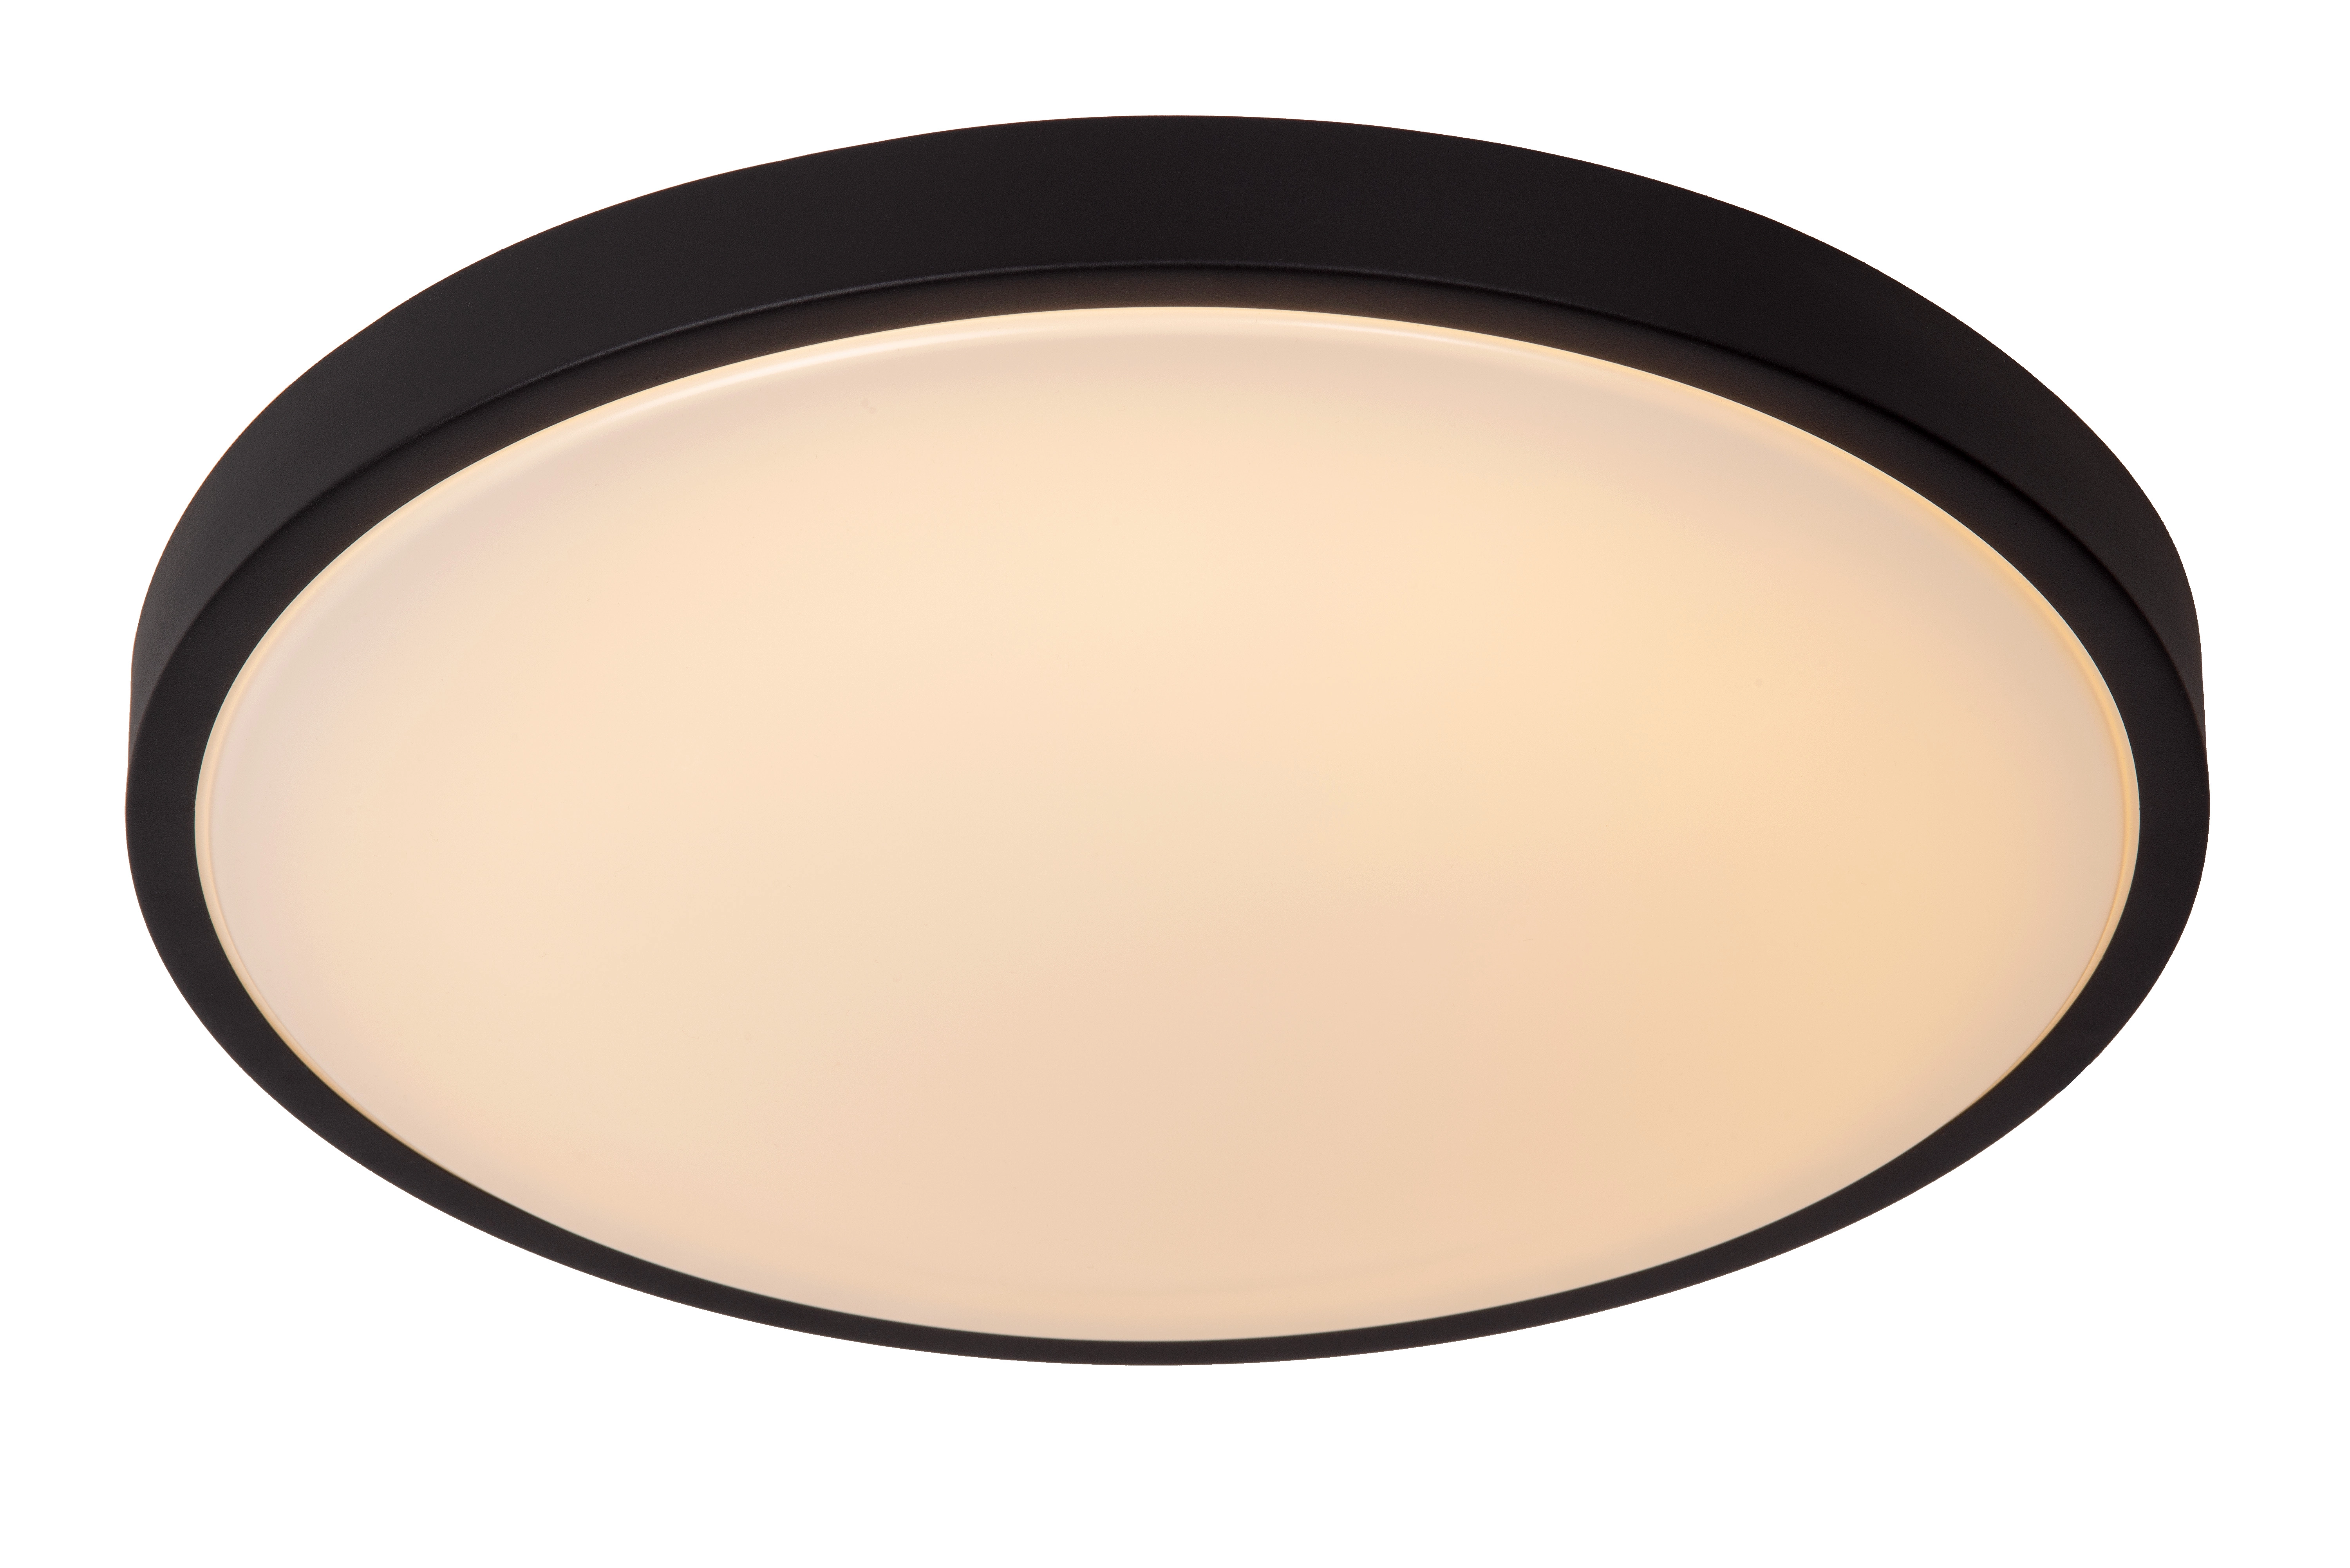 LU 79110/40/30 Lucide DASHER - Flush ceiling light Bathroom - Ø 41 cm - LED - 1x24W 2700K - IP44 - B